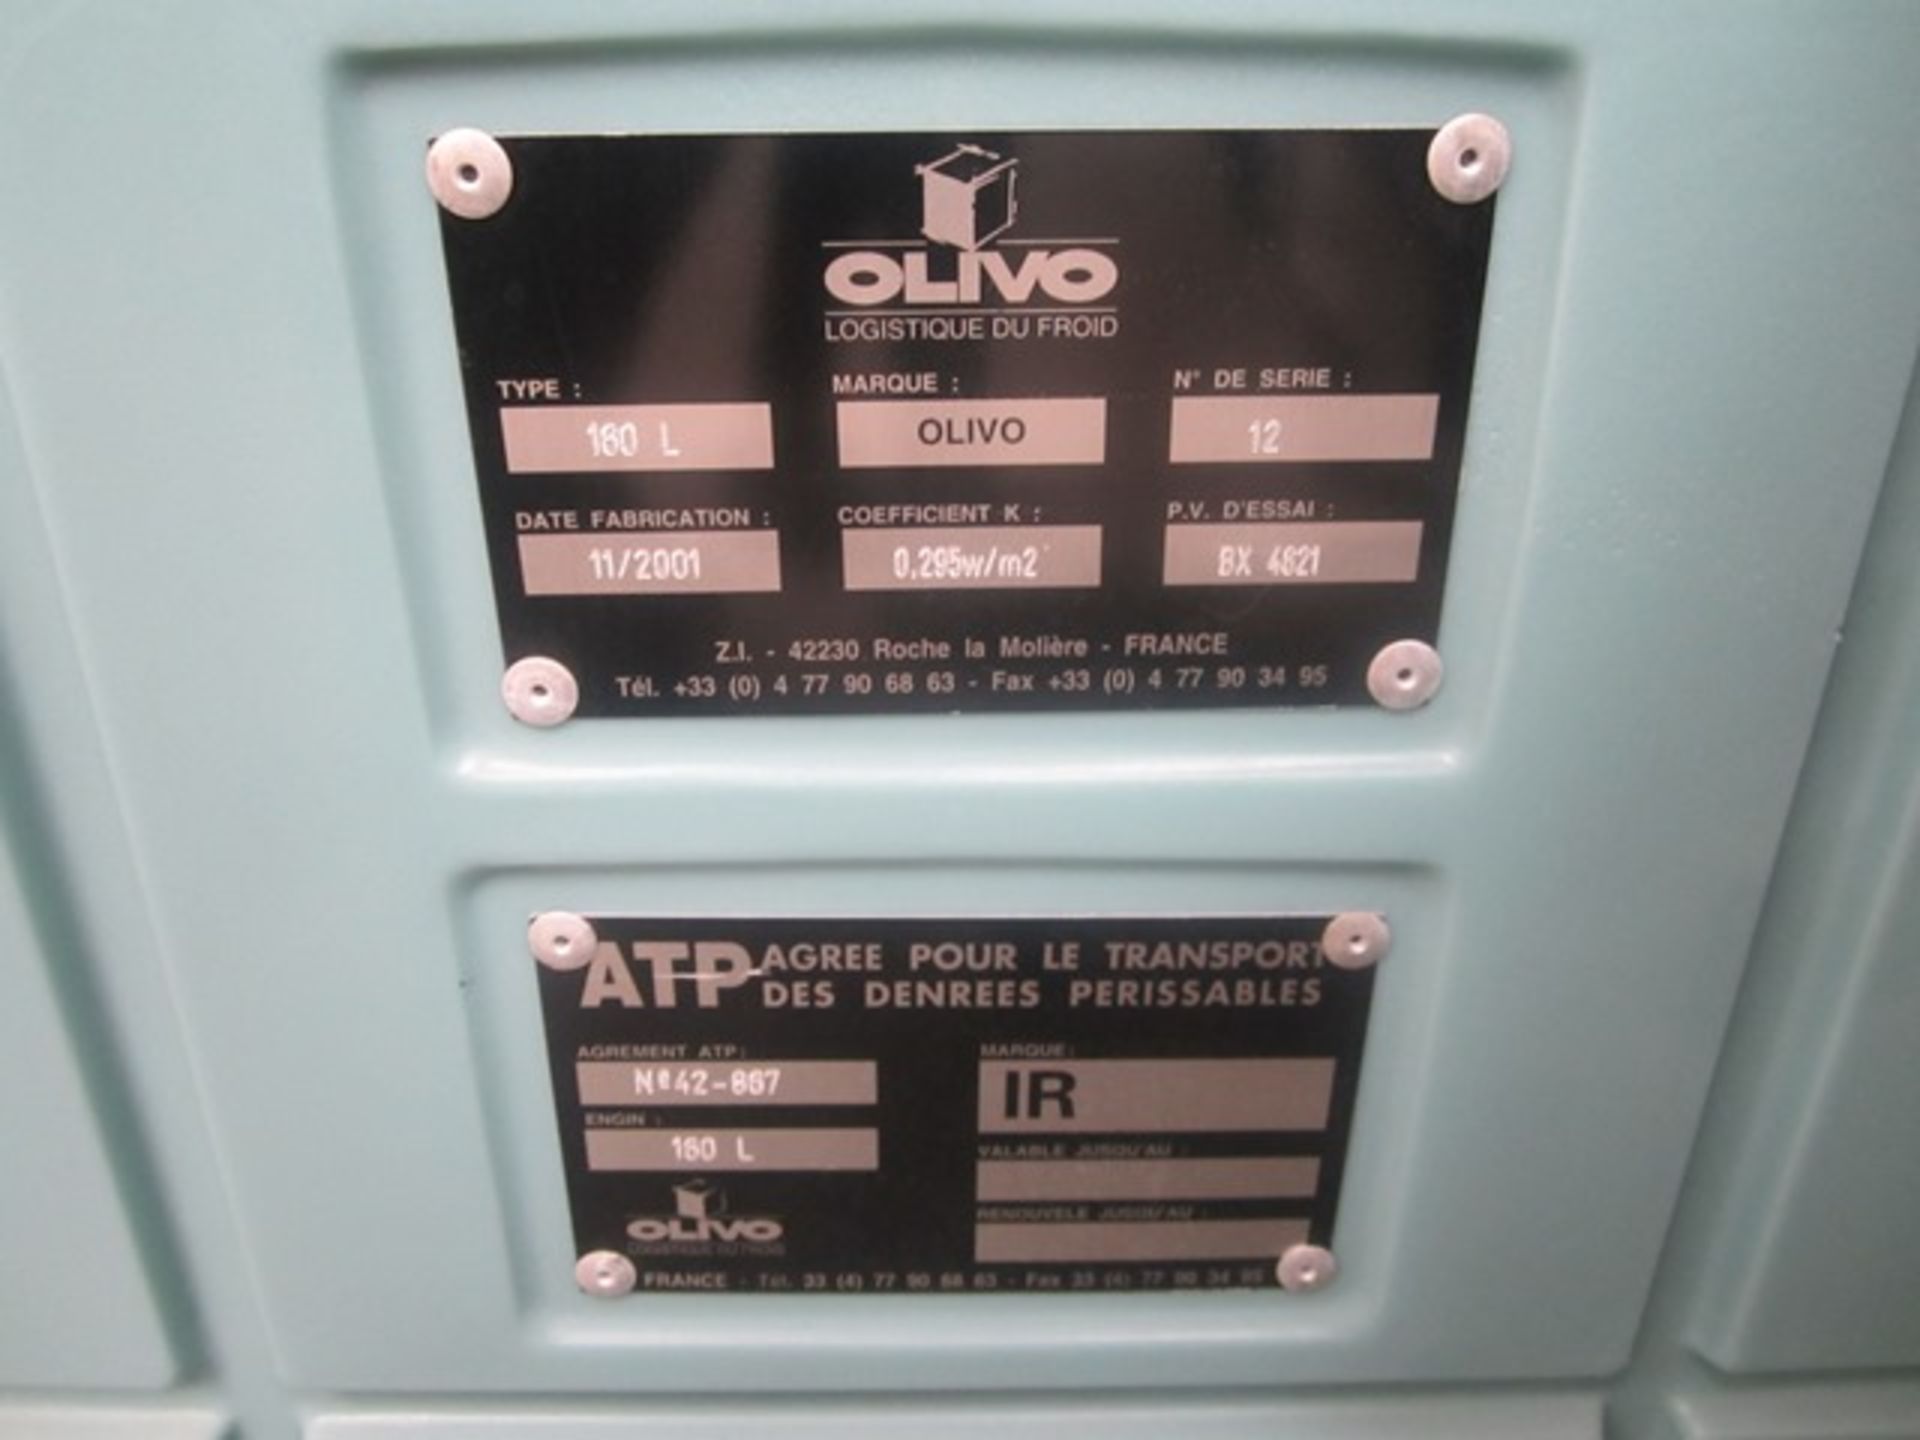 Olivo Cardice Air Liquid cold storage unit - Image 4 of 4